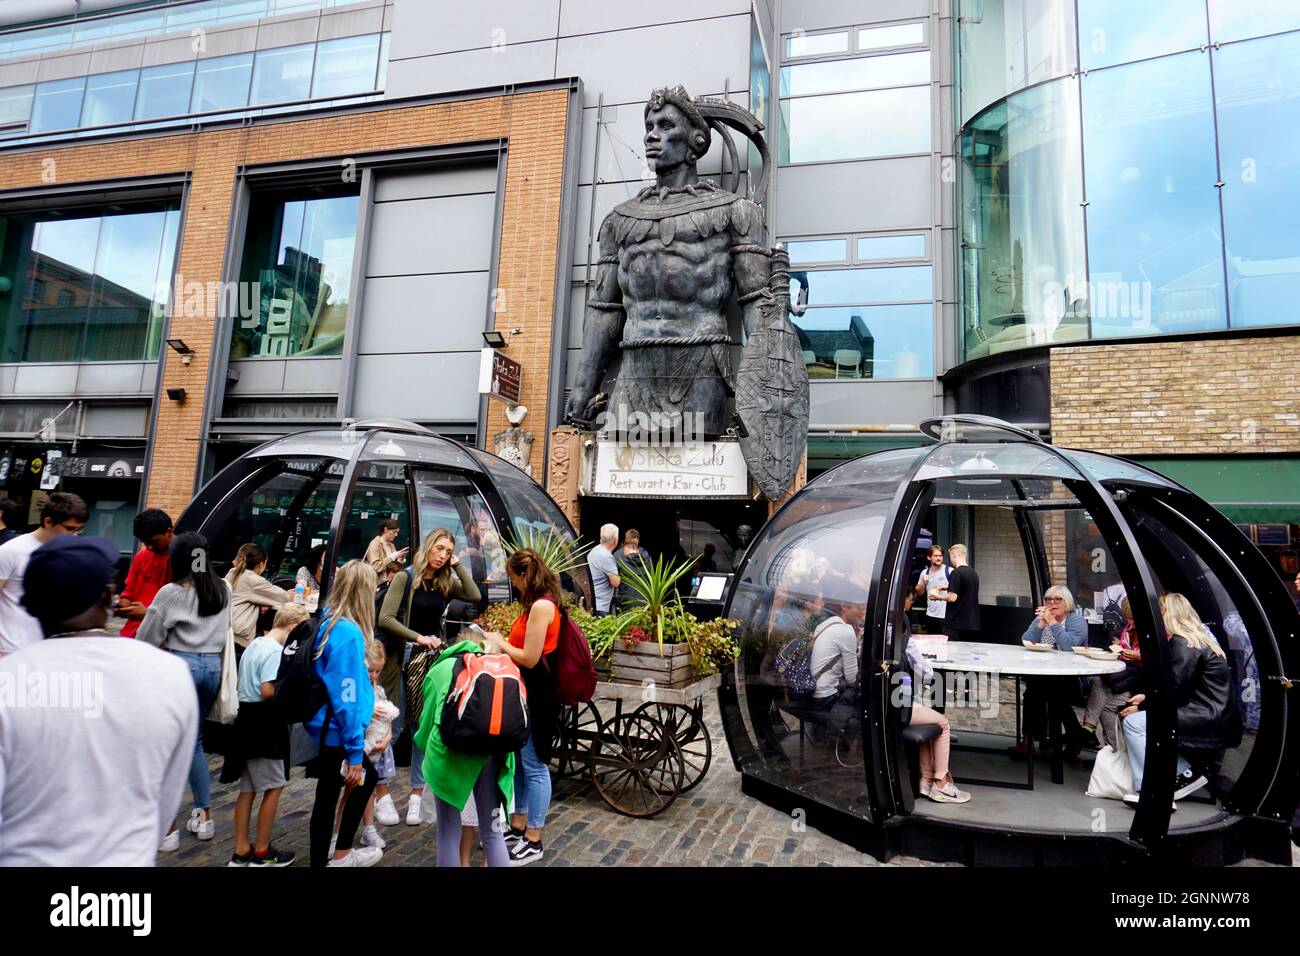 Statue de Shaka Zulu dans le marché de Camden, ville de Camden, Londres, Royaume-Uni Banque D'Images